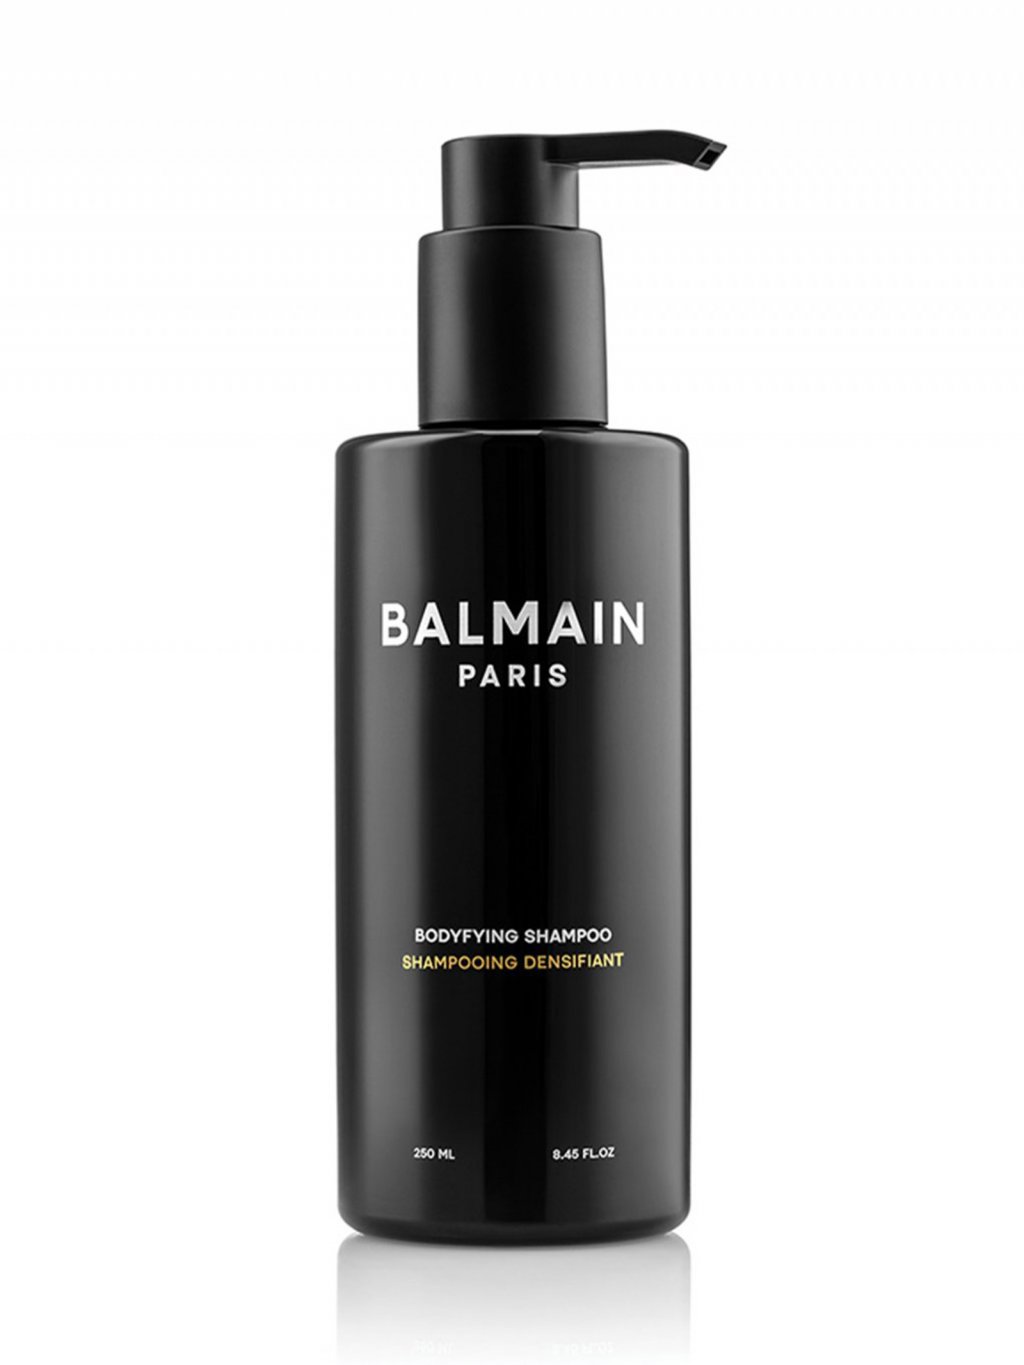 Balmain body shampoo 250ml